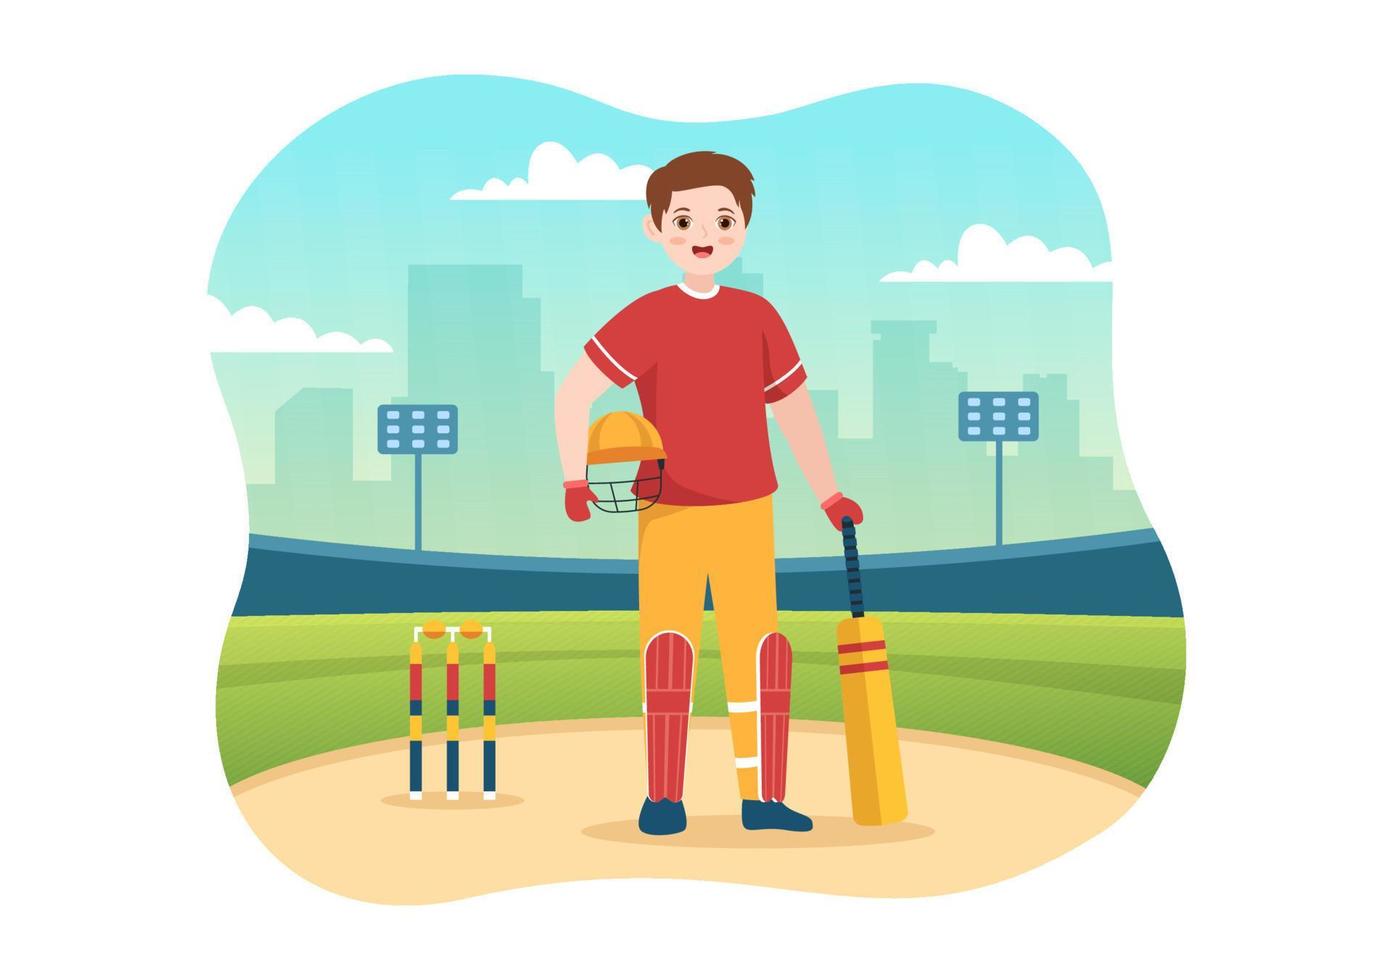 bateador jugando ilustración de deporte de cricket con bate y pelotas en el campo para el campeonato en plantillas planas dibujadas a mano de dibujos animados vector